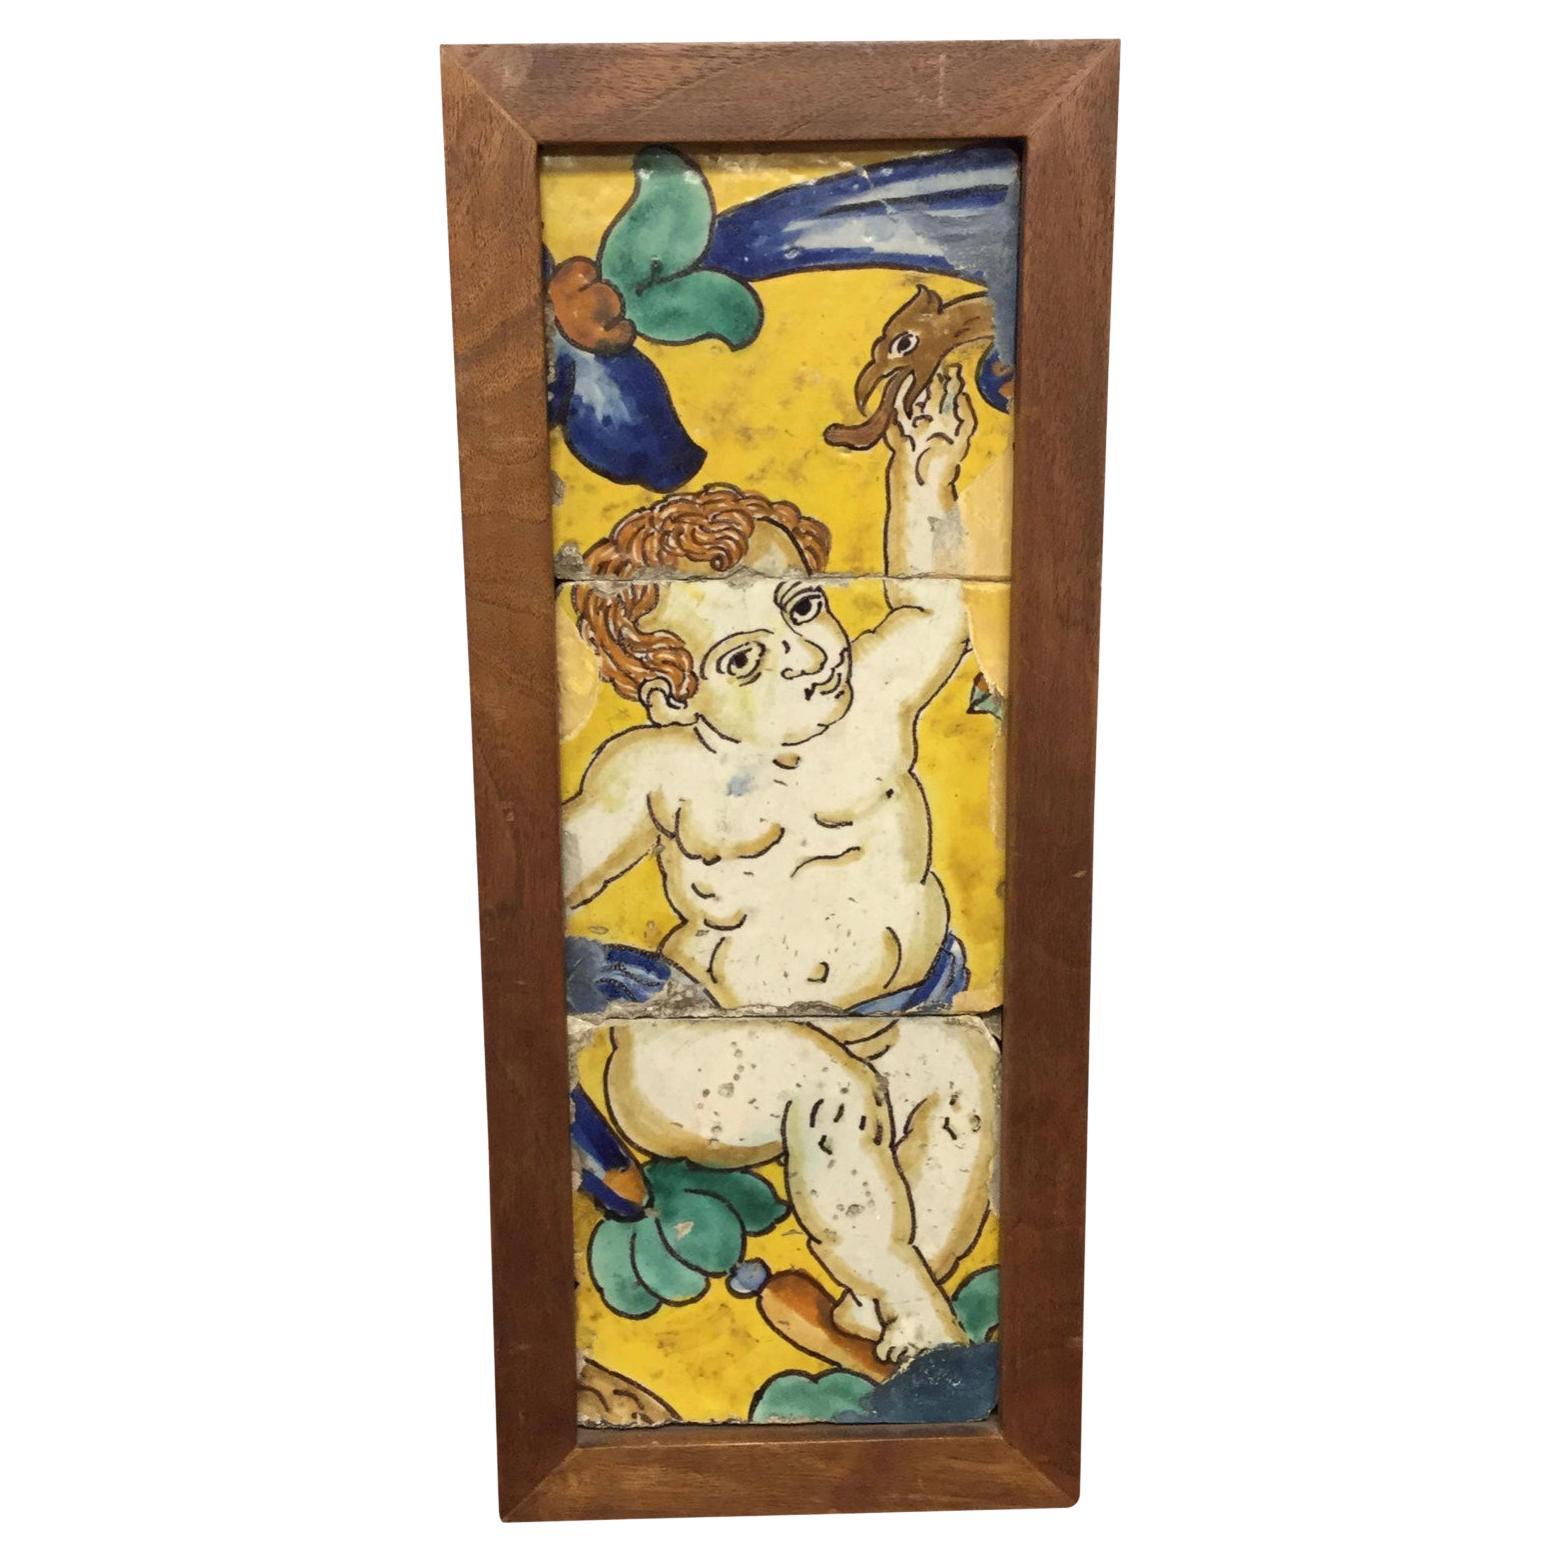 Tiles encadrés en faïence et faïence de majolique italienne du 18ème siècle